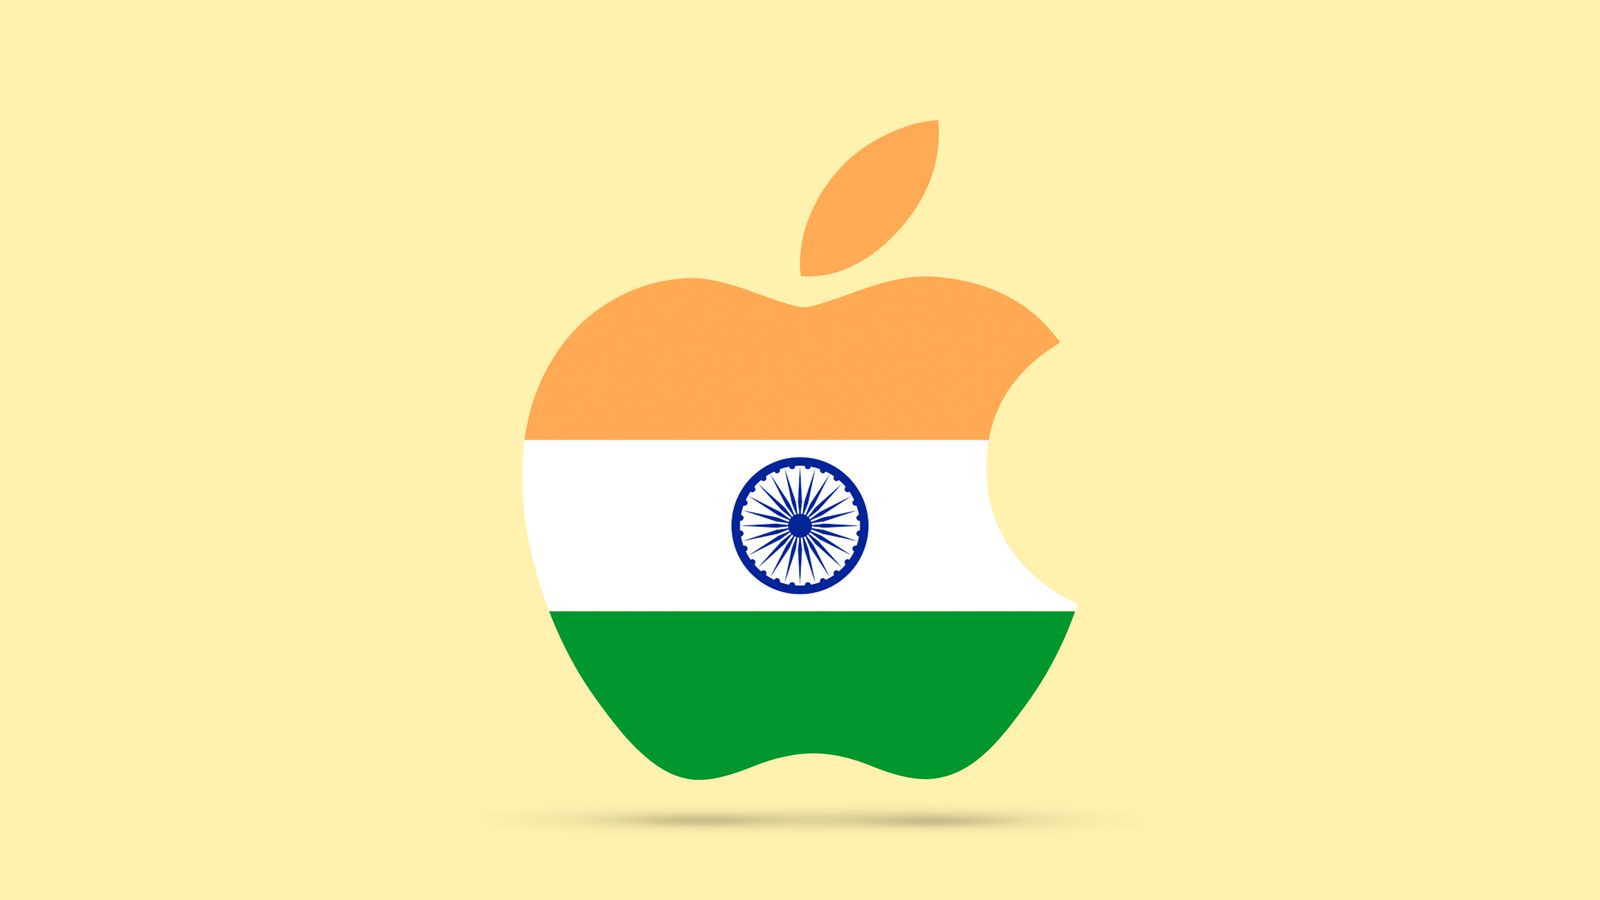 Магазин Apple в Мумбаи откроется в апреле, за ним последует второй магазин в Нью-Дели